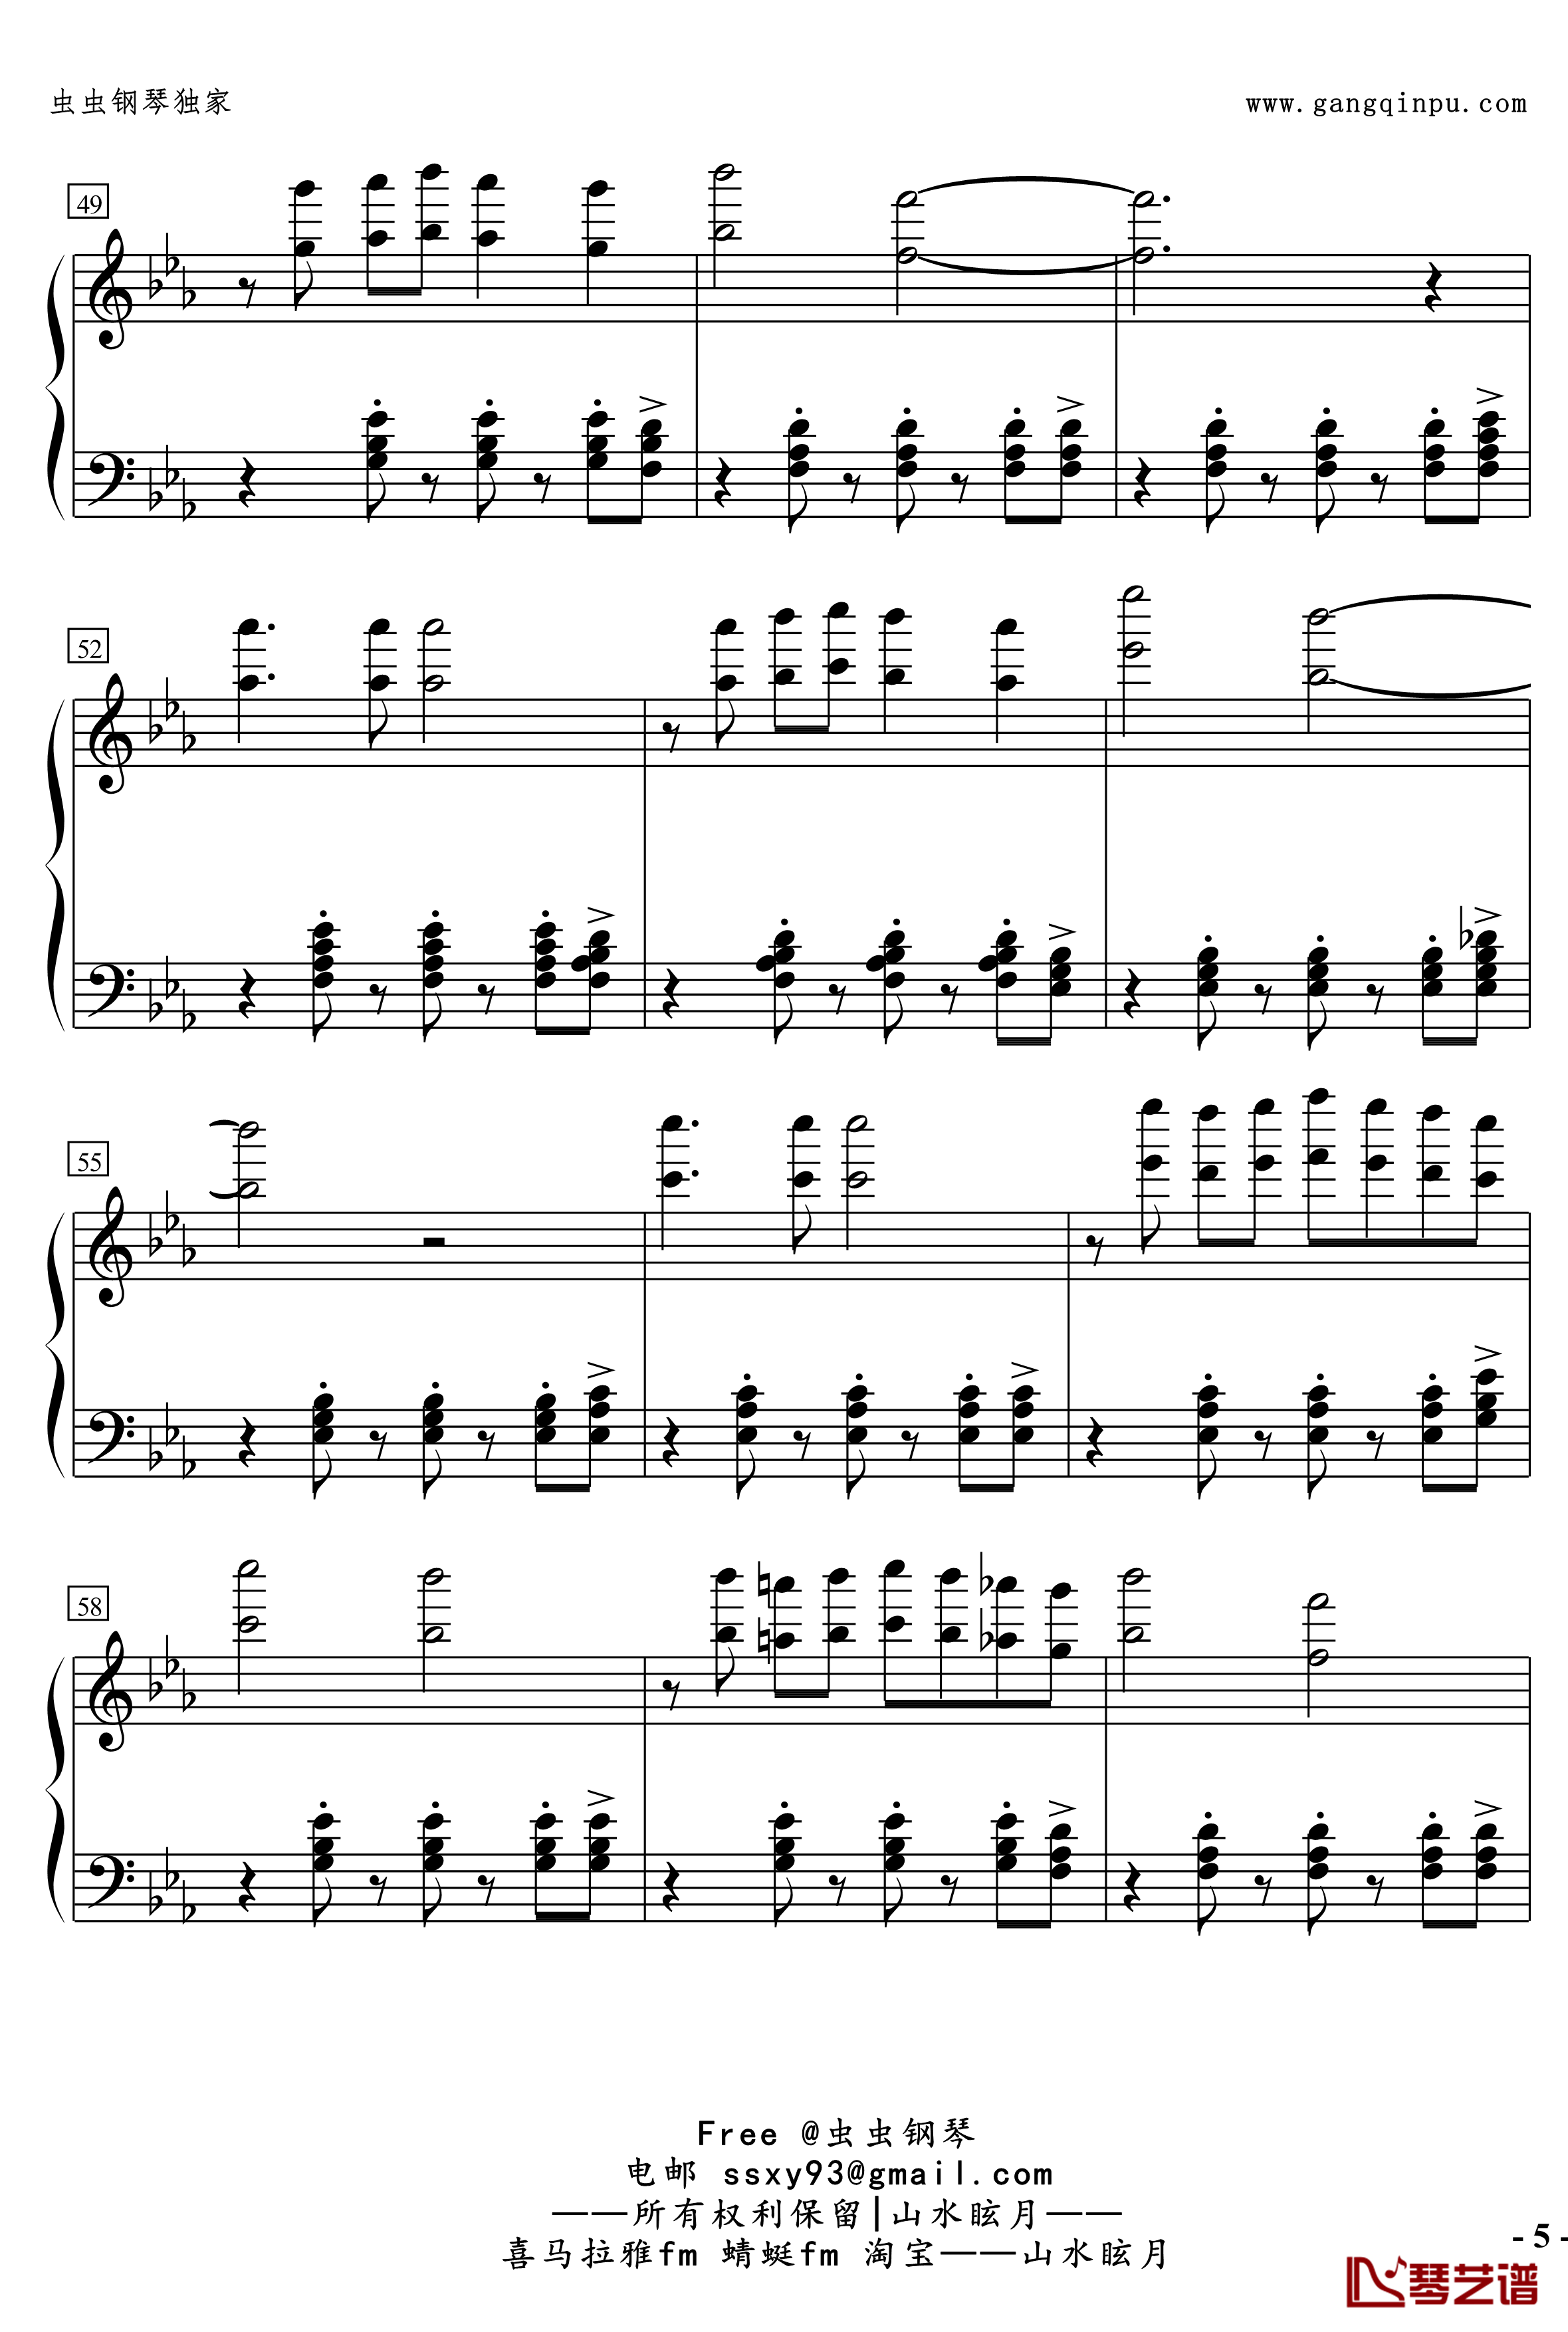 No.2無名探戈钢琴谱-修订-jerry57435